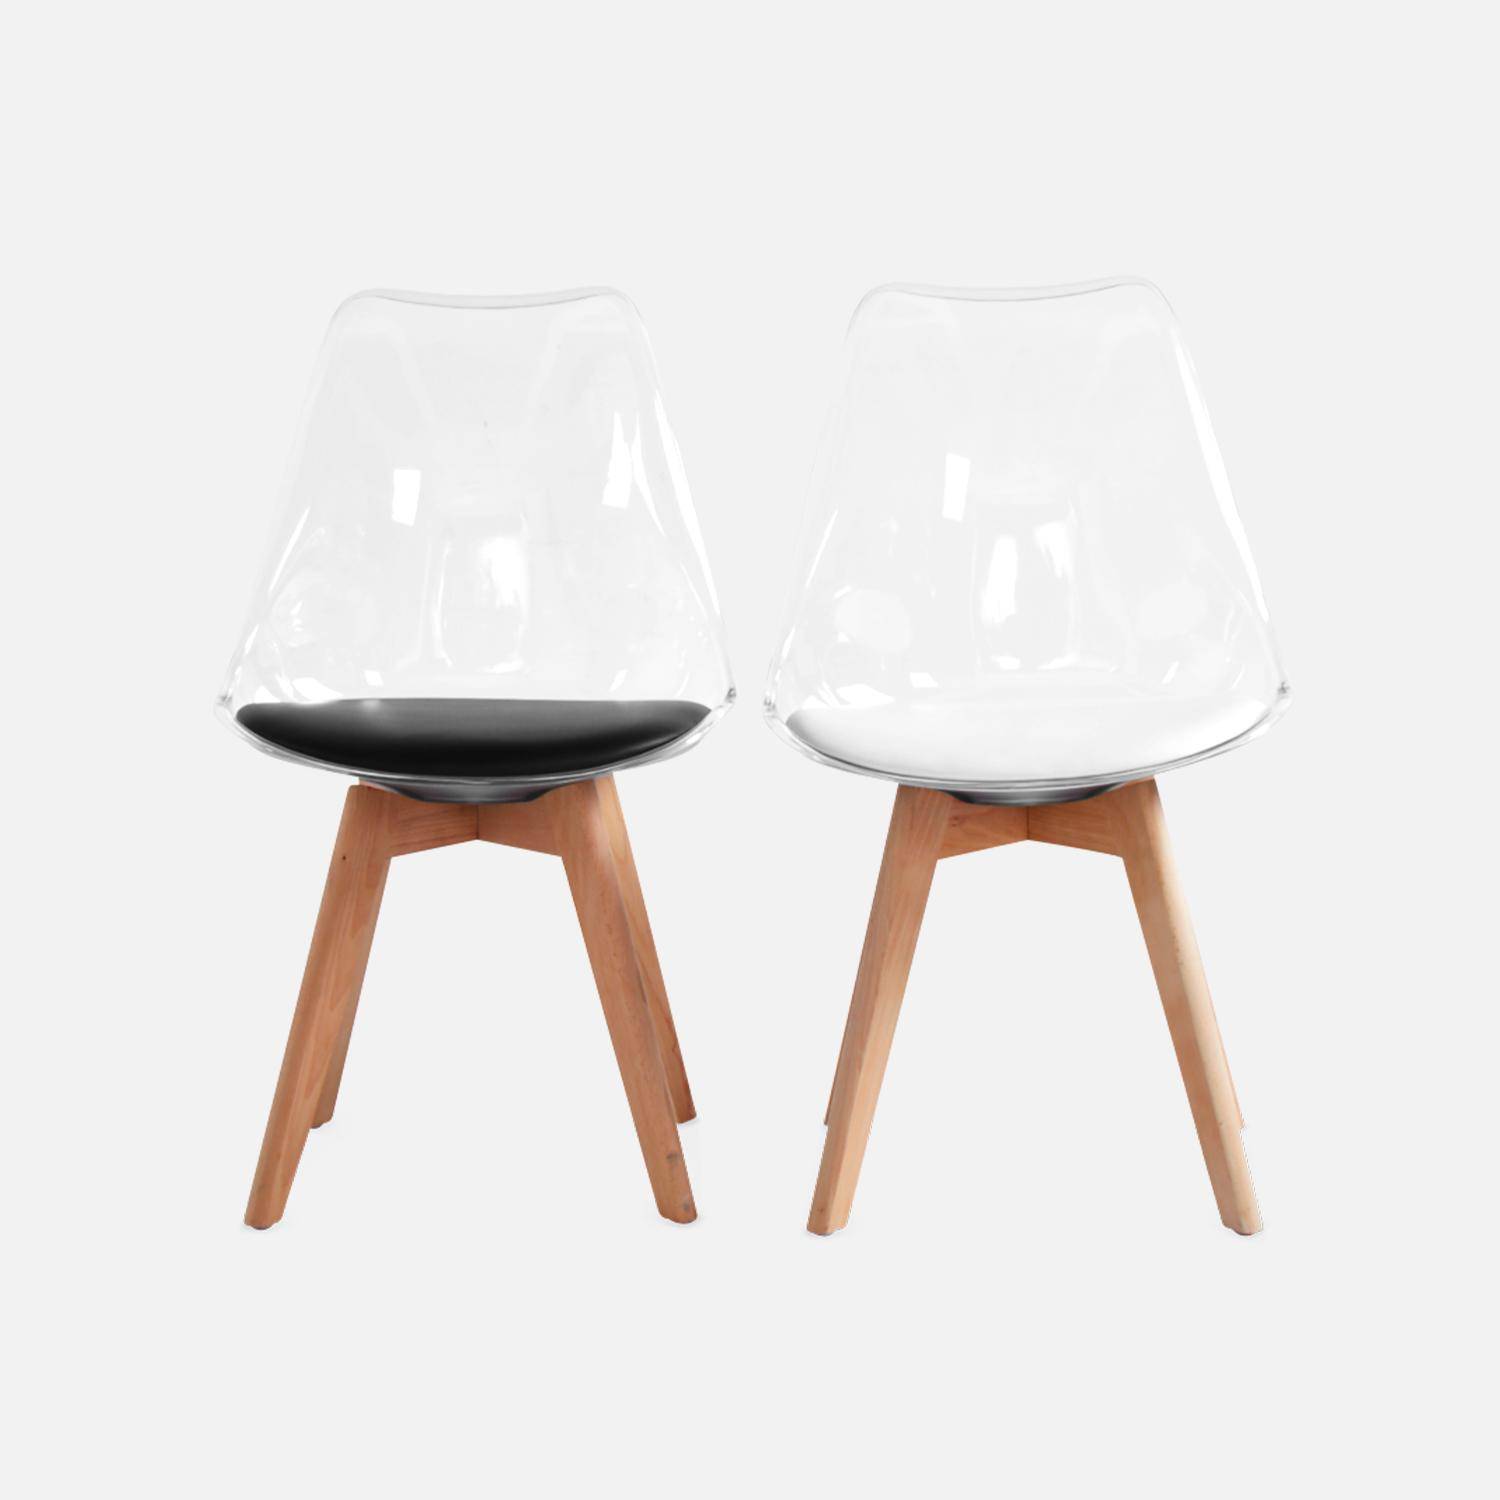 4er Set Stühle im skandinavischen Stil - Lagertha - Holzbeine, Ein Sitz, schwarzes Kissen, transparente Sitzschale Photo8